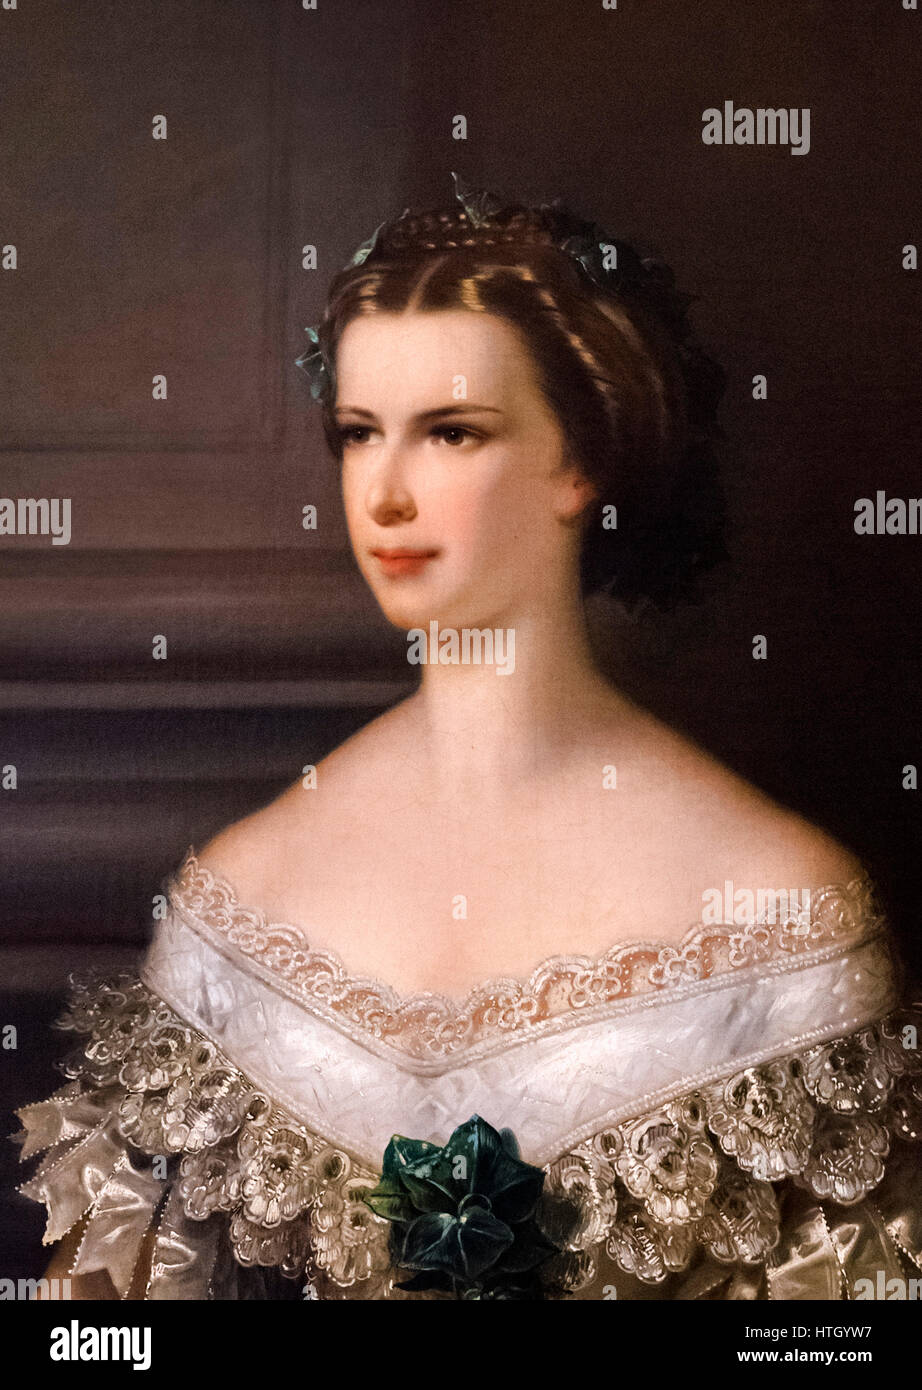 Sisi, Portrait. Kaiserin Elisabeth von Österreich (1837-1898), als Sisi, die Frau von Kaiser Franz Joseph I. Gemälde von Franz Schrotzberg, Öl auf Leinwand, 1856 bekannt. Detail eines größeren Malerei, HTGYW 6. Stockfoto